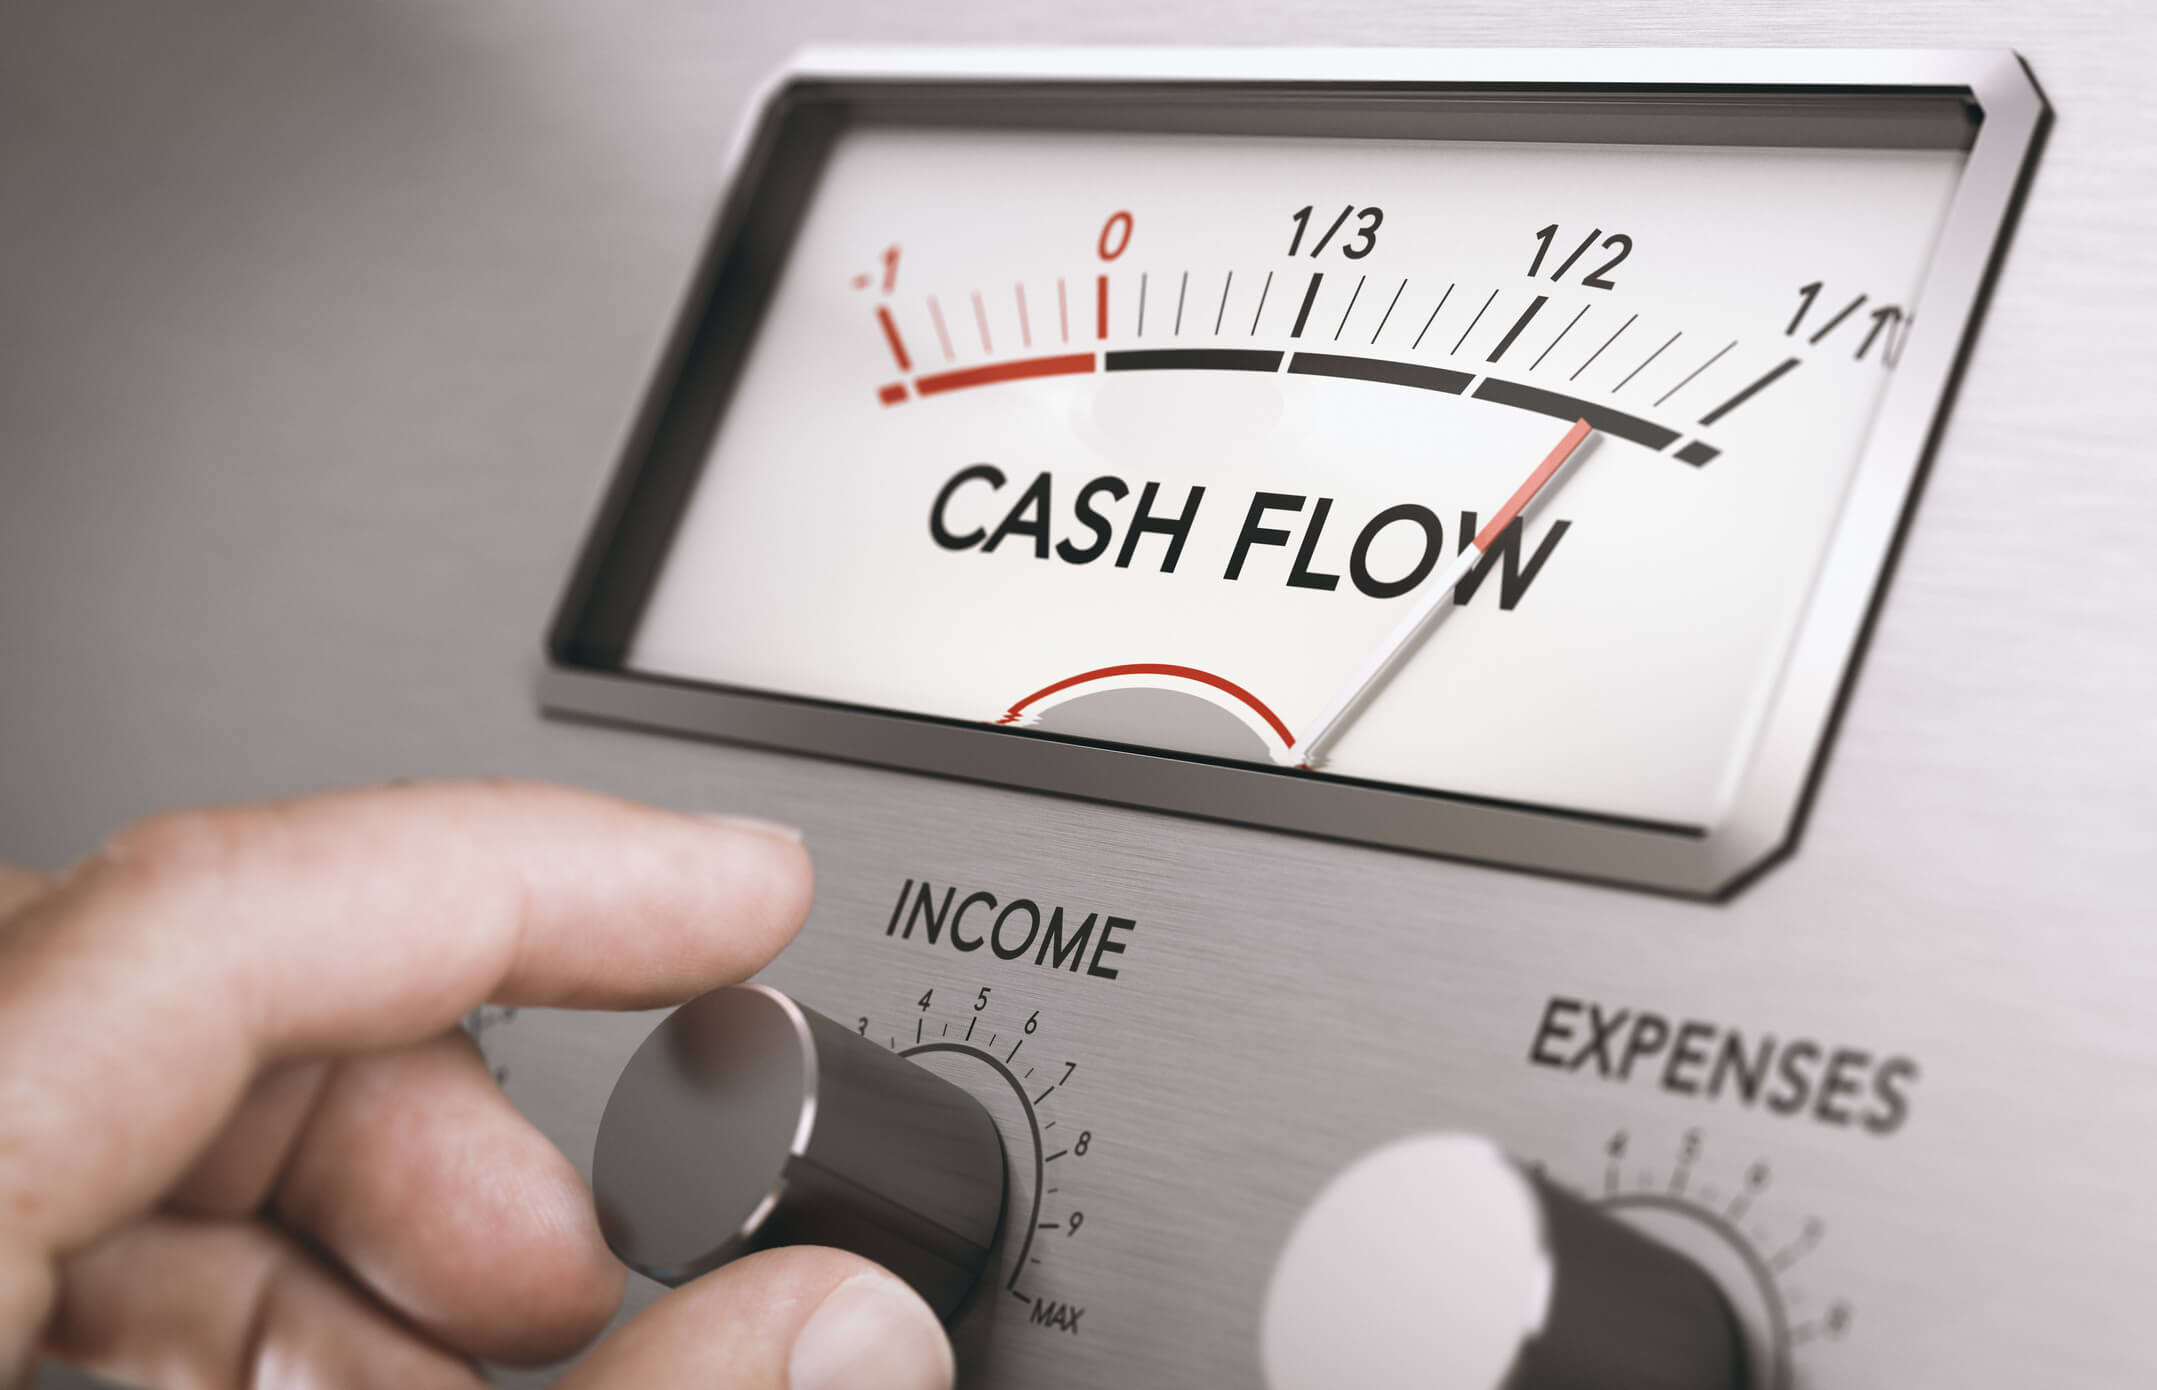 Improve Cash Flow - Complete Controller